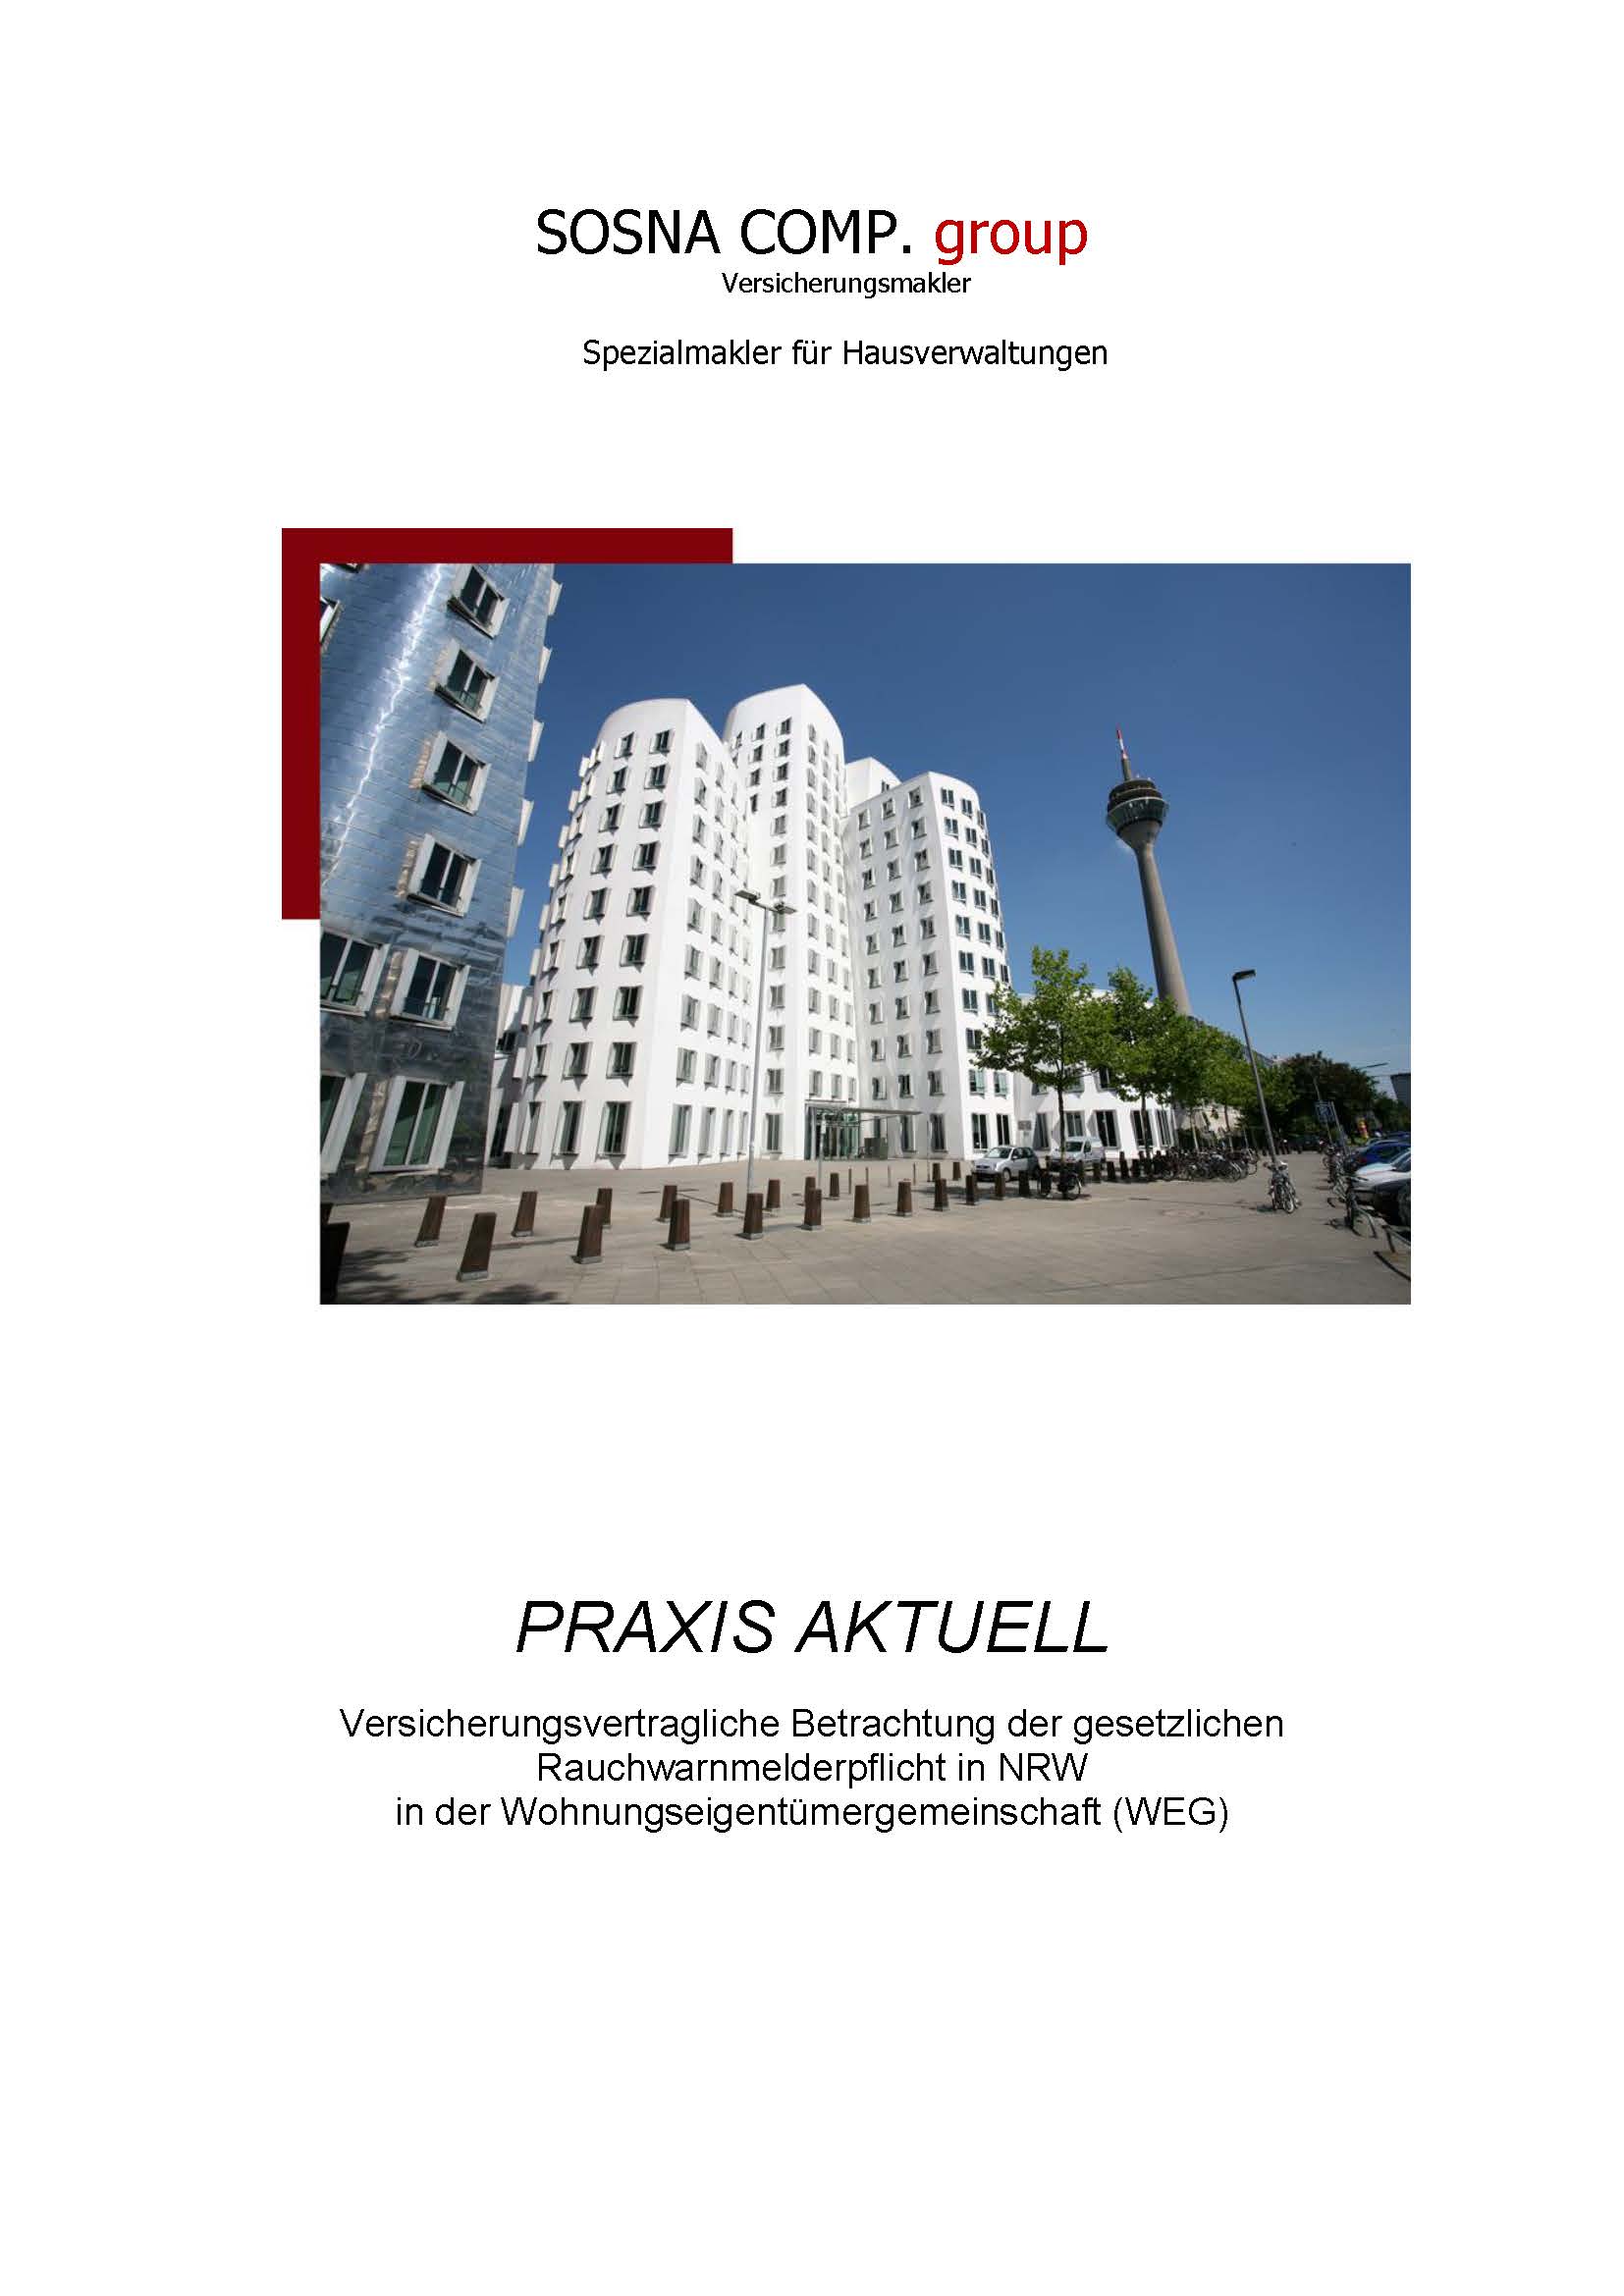 sosna_website_praxis_aktuell_2019_rauchwarnmelder_Seite_01